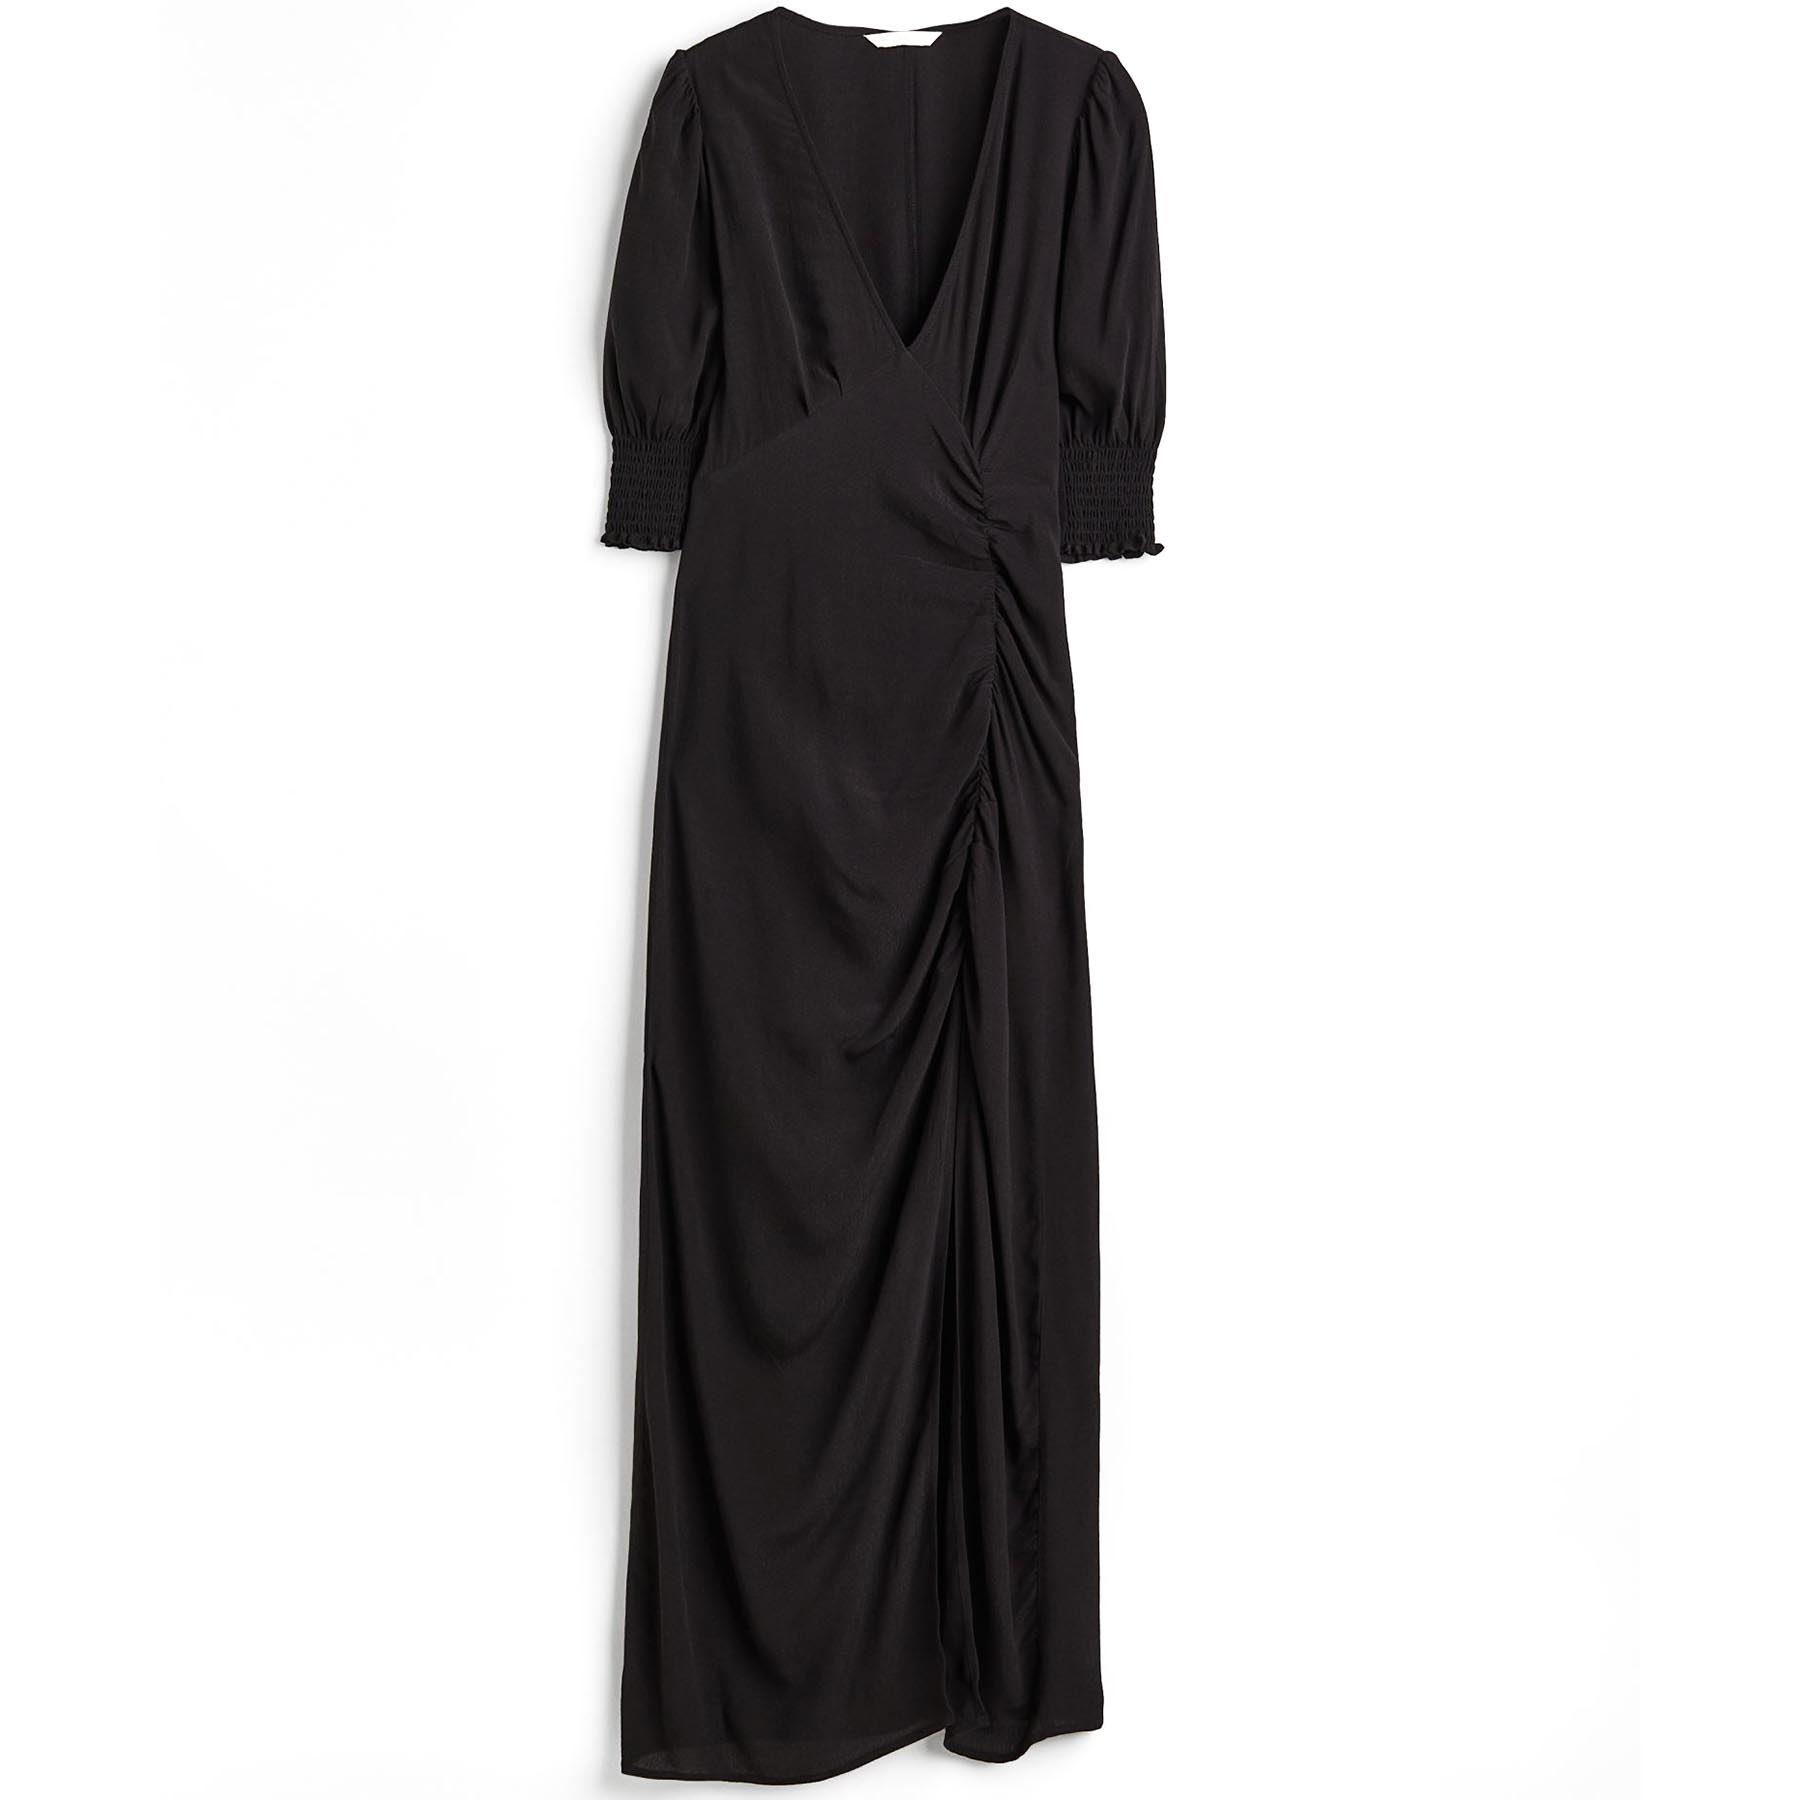 Платье H&M Puff-sleeved Creped, черный платье длинное с короткими рукавами l синий